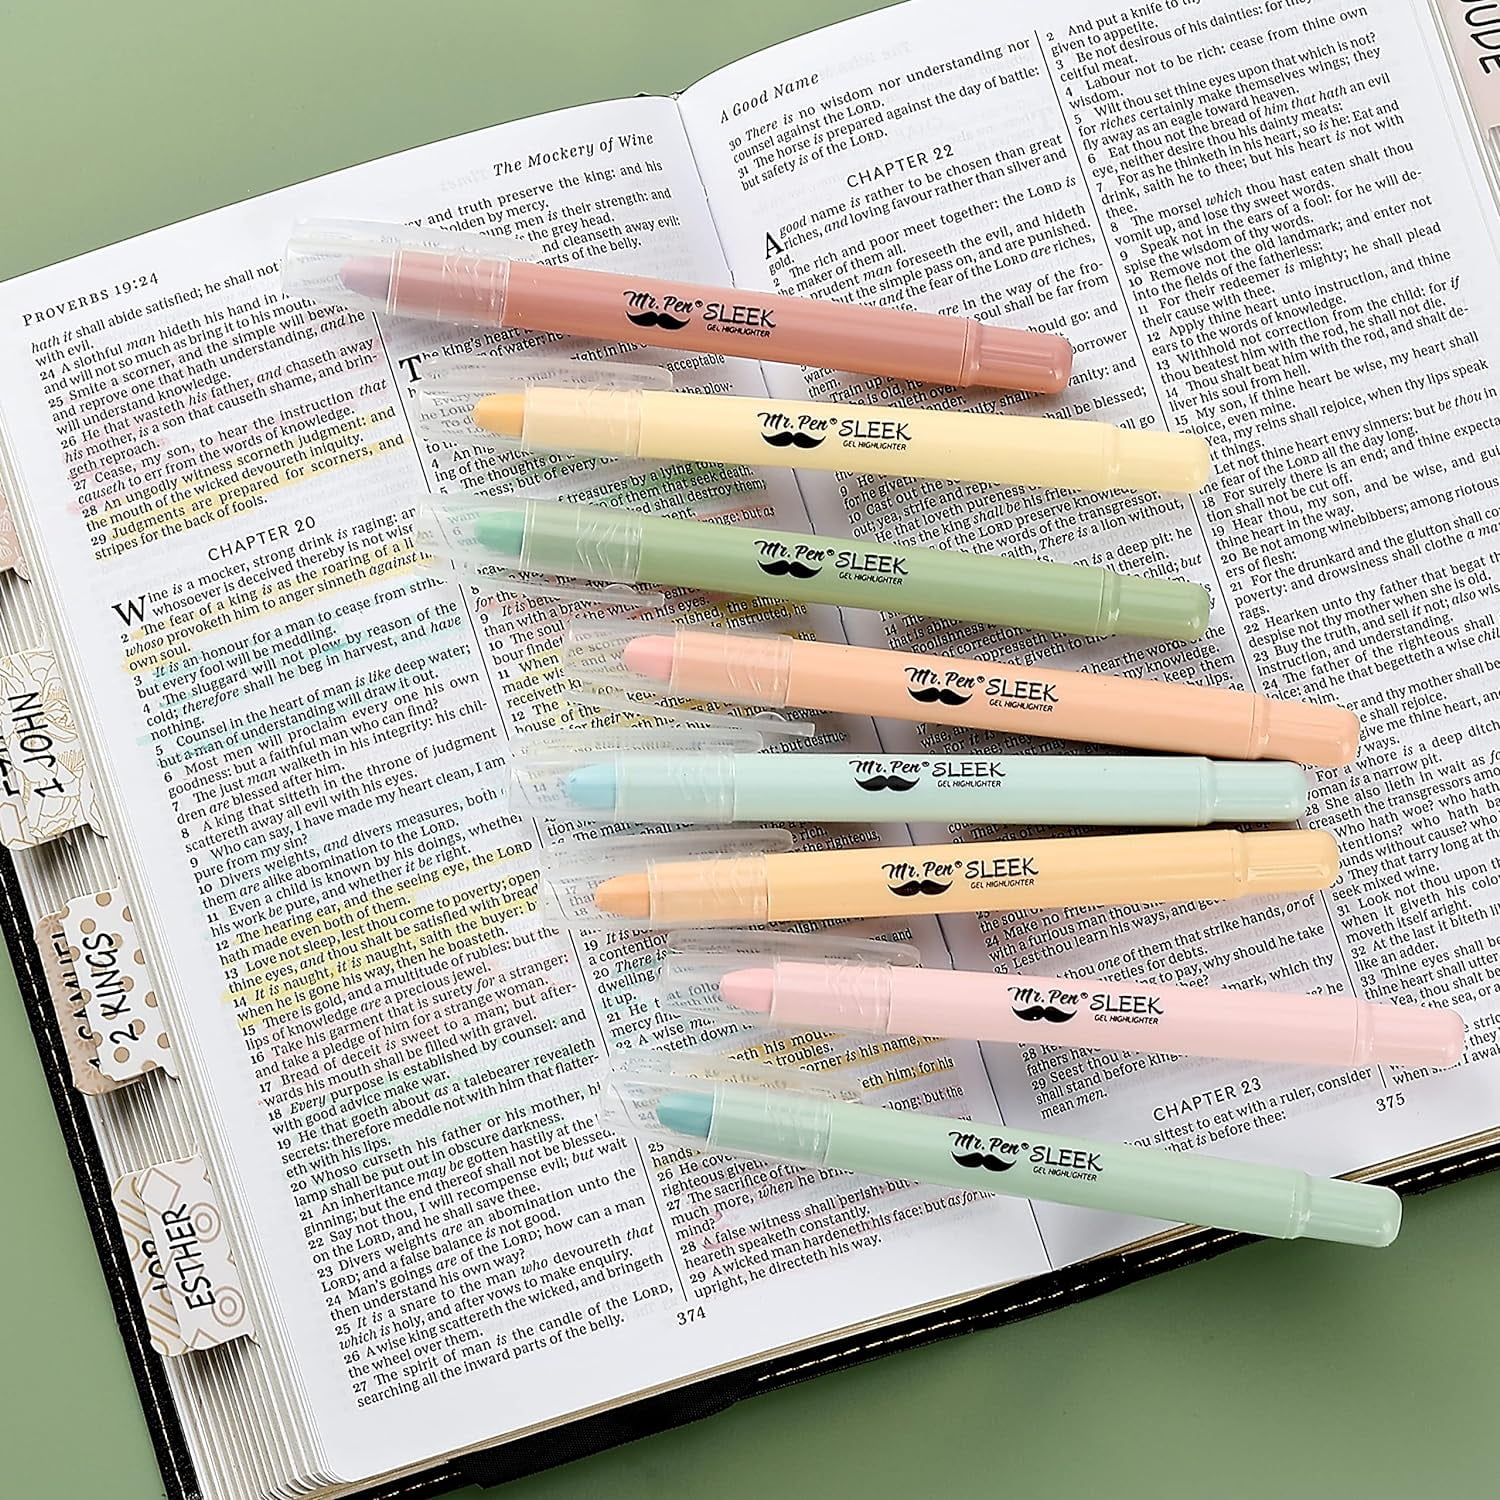 Mr. Pen UZOF08M215 Mr Pen- gel Highlighter, 8 Pack, Pastel colors